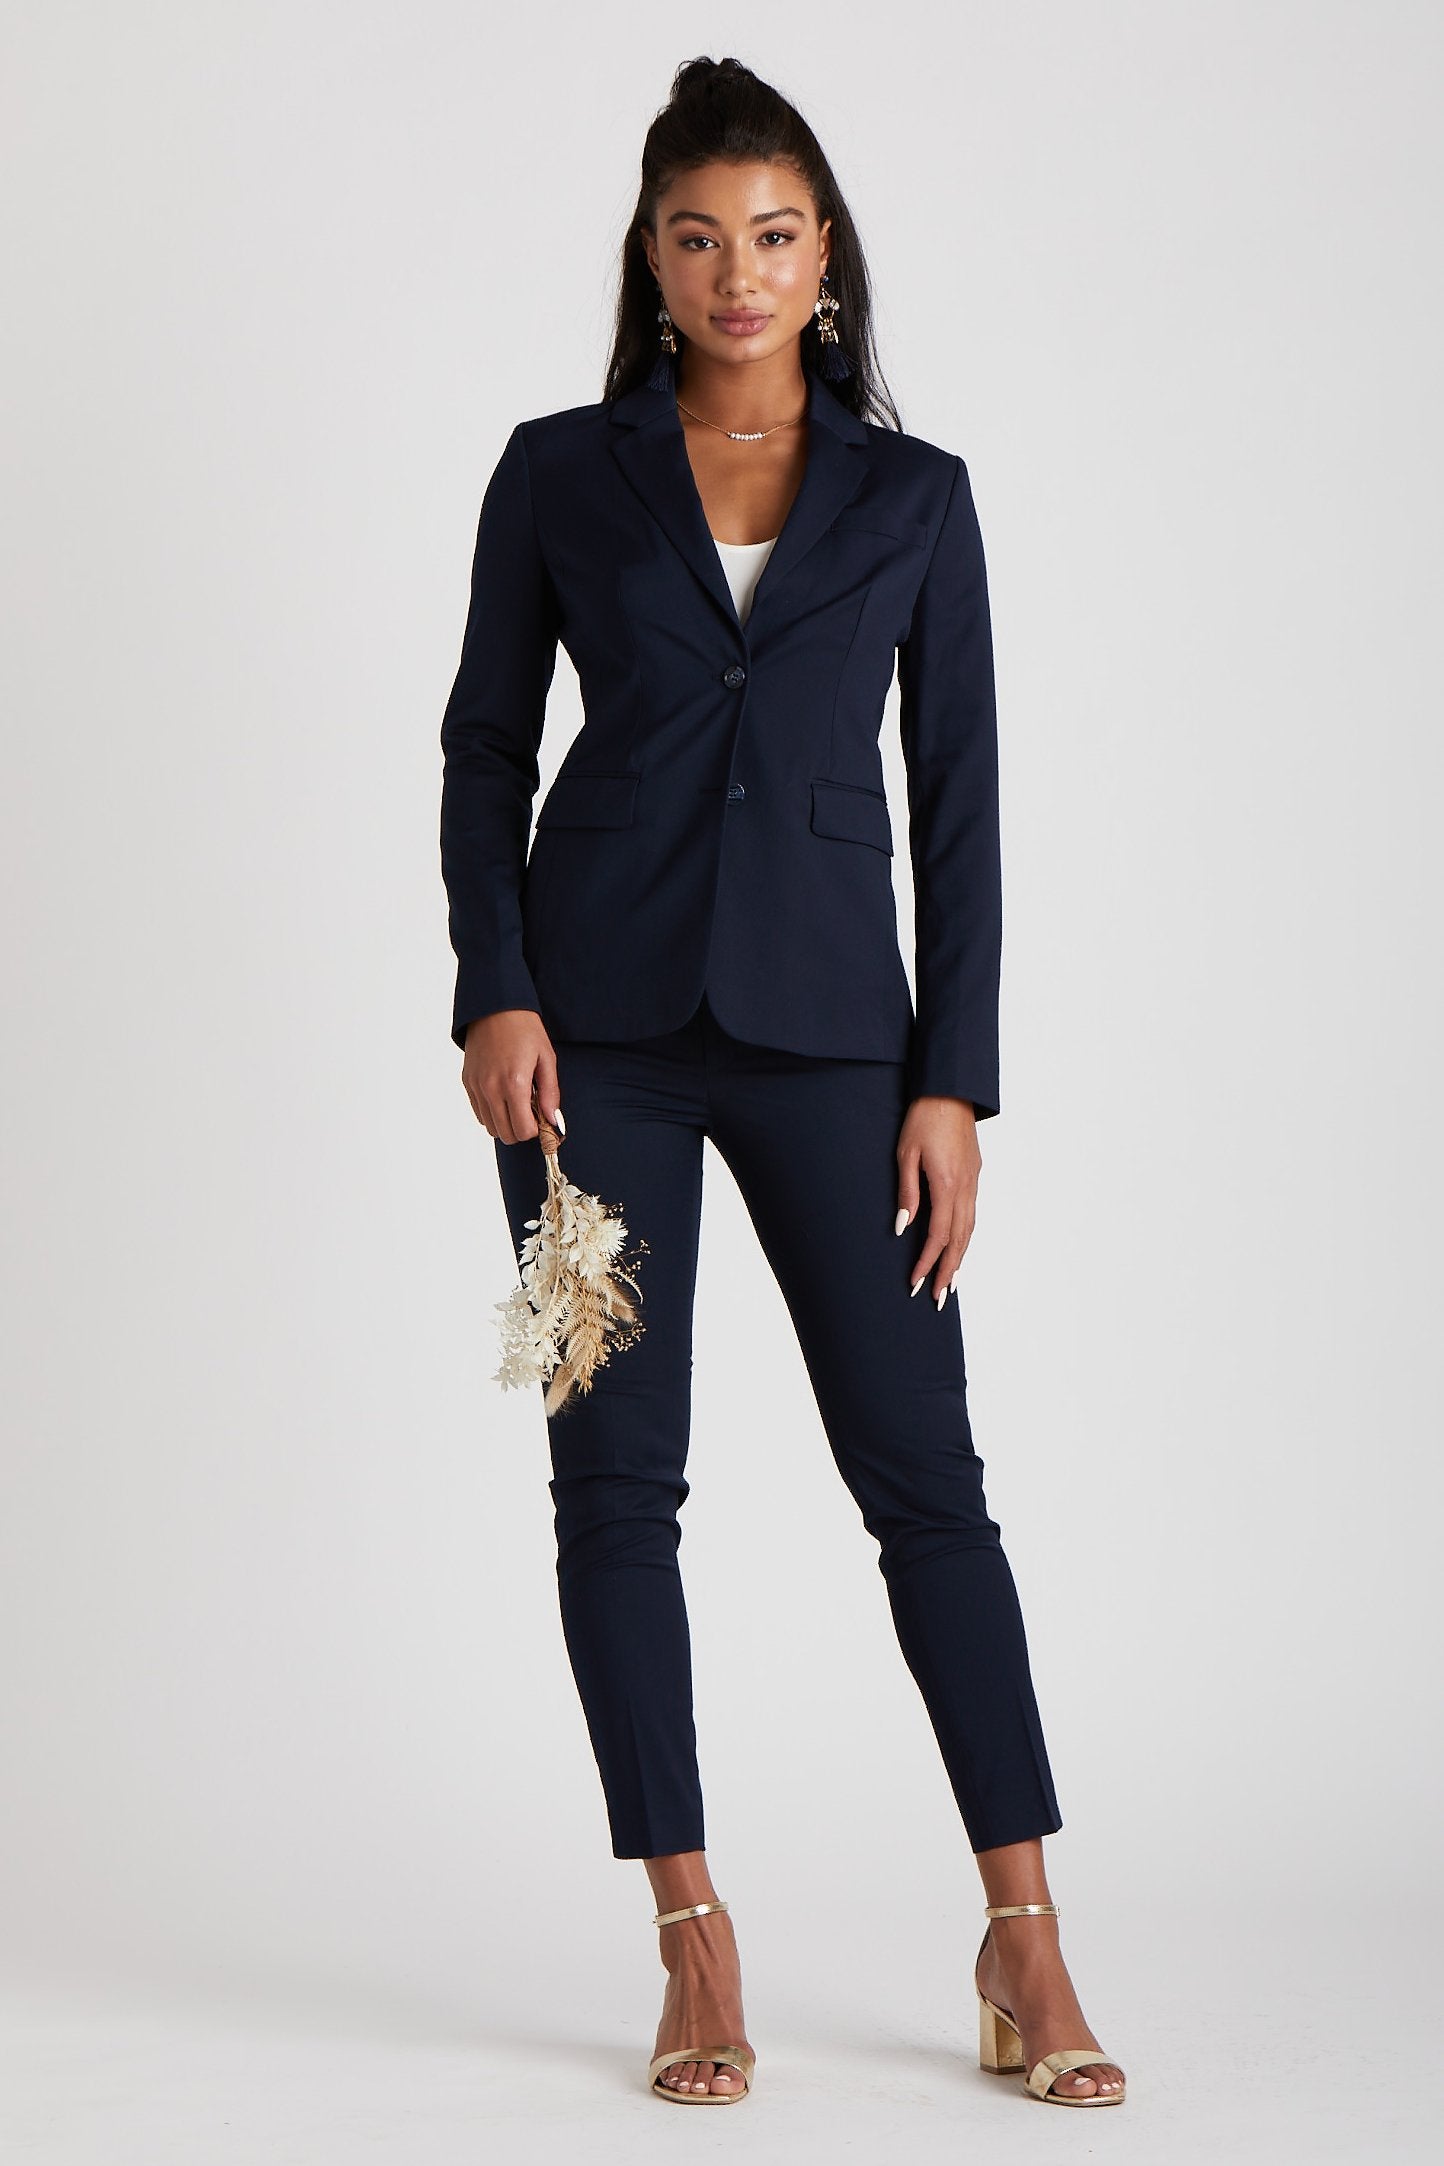 Black Suit for Women/three Piece Suit/top/womens Suit/womens Suit Set/wedding  Suit/ Womens Coats Suit Set 